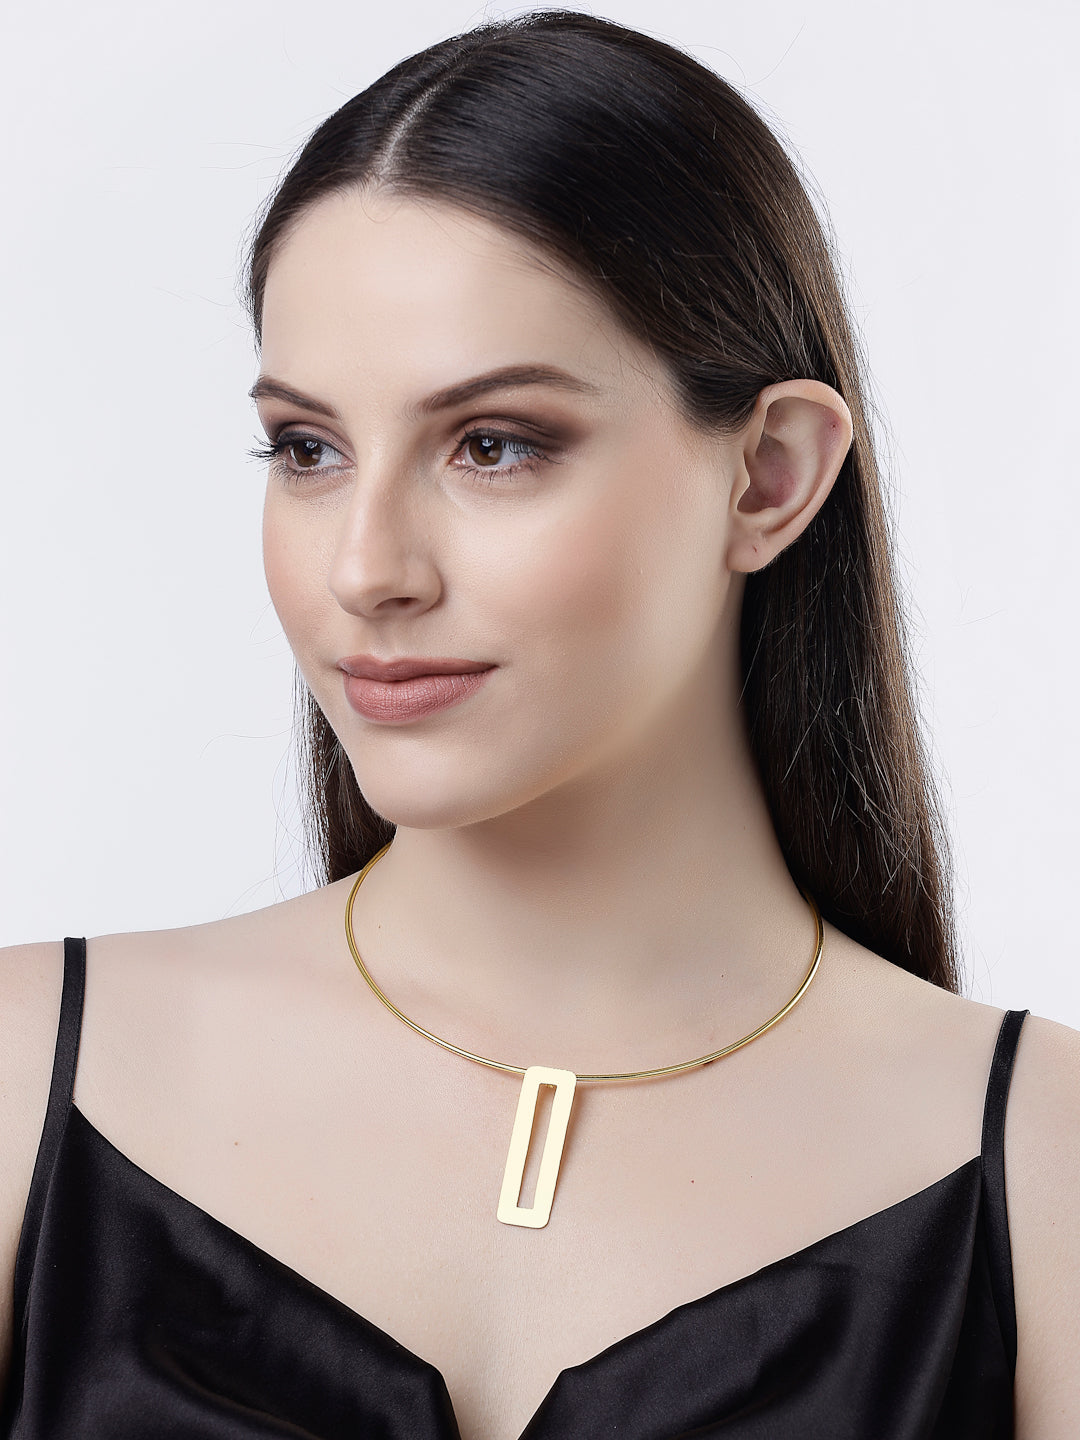 Women's Gold-plated Circular Choker Necklace - NVR